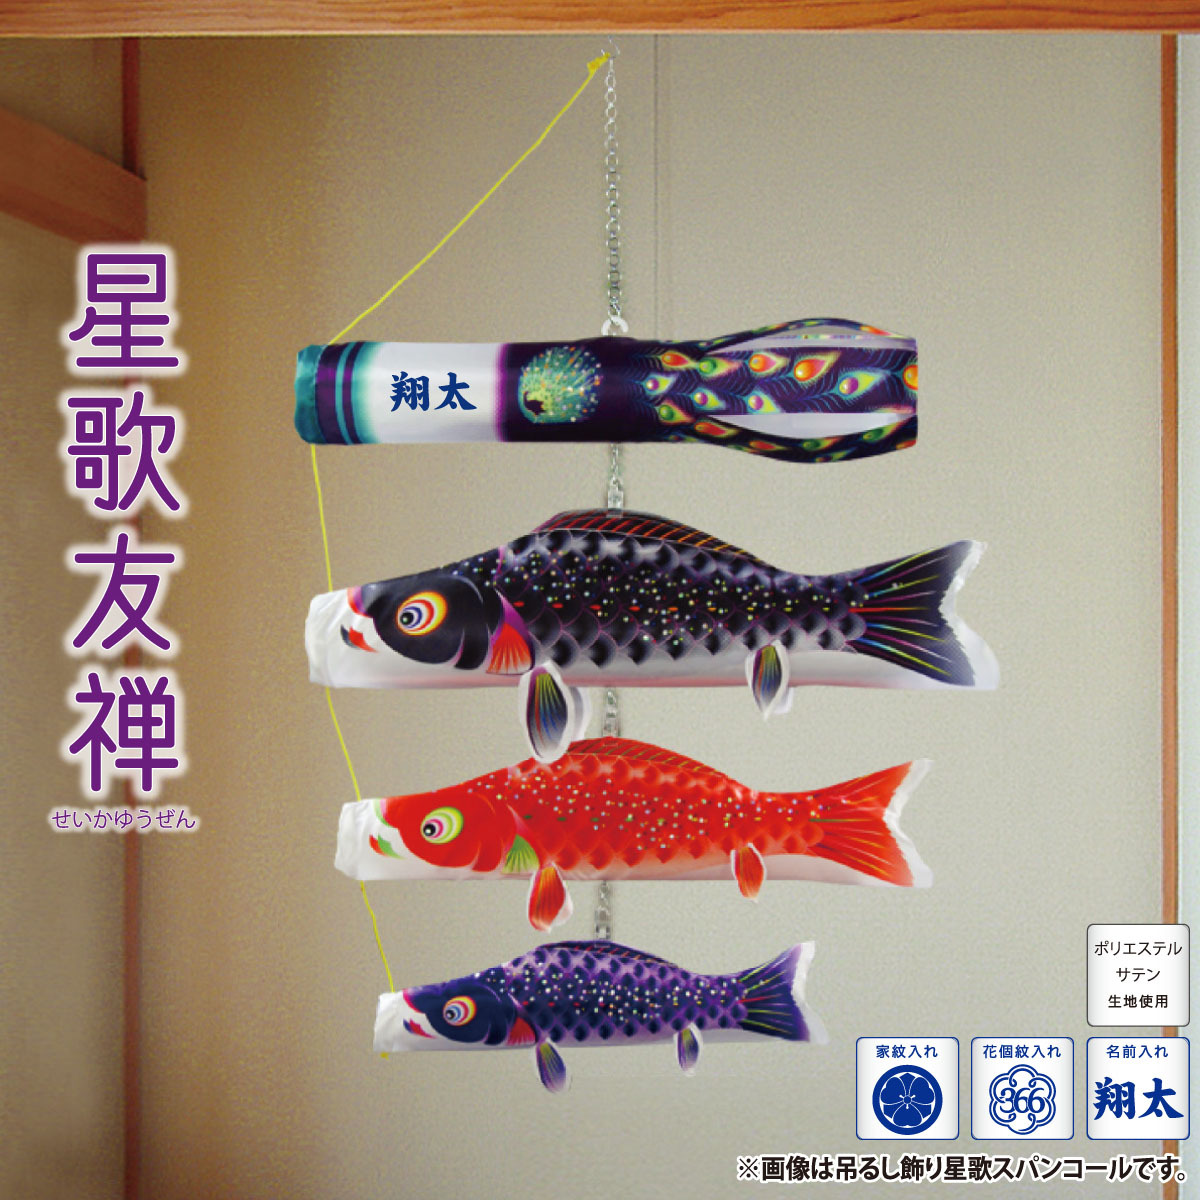 室内用鯉のぼり 吊るし飾り 星歌友禅 KOI-T-123-433 徳永鯉のぼり :kot